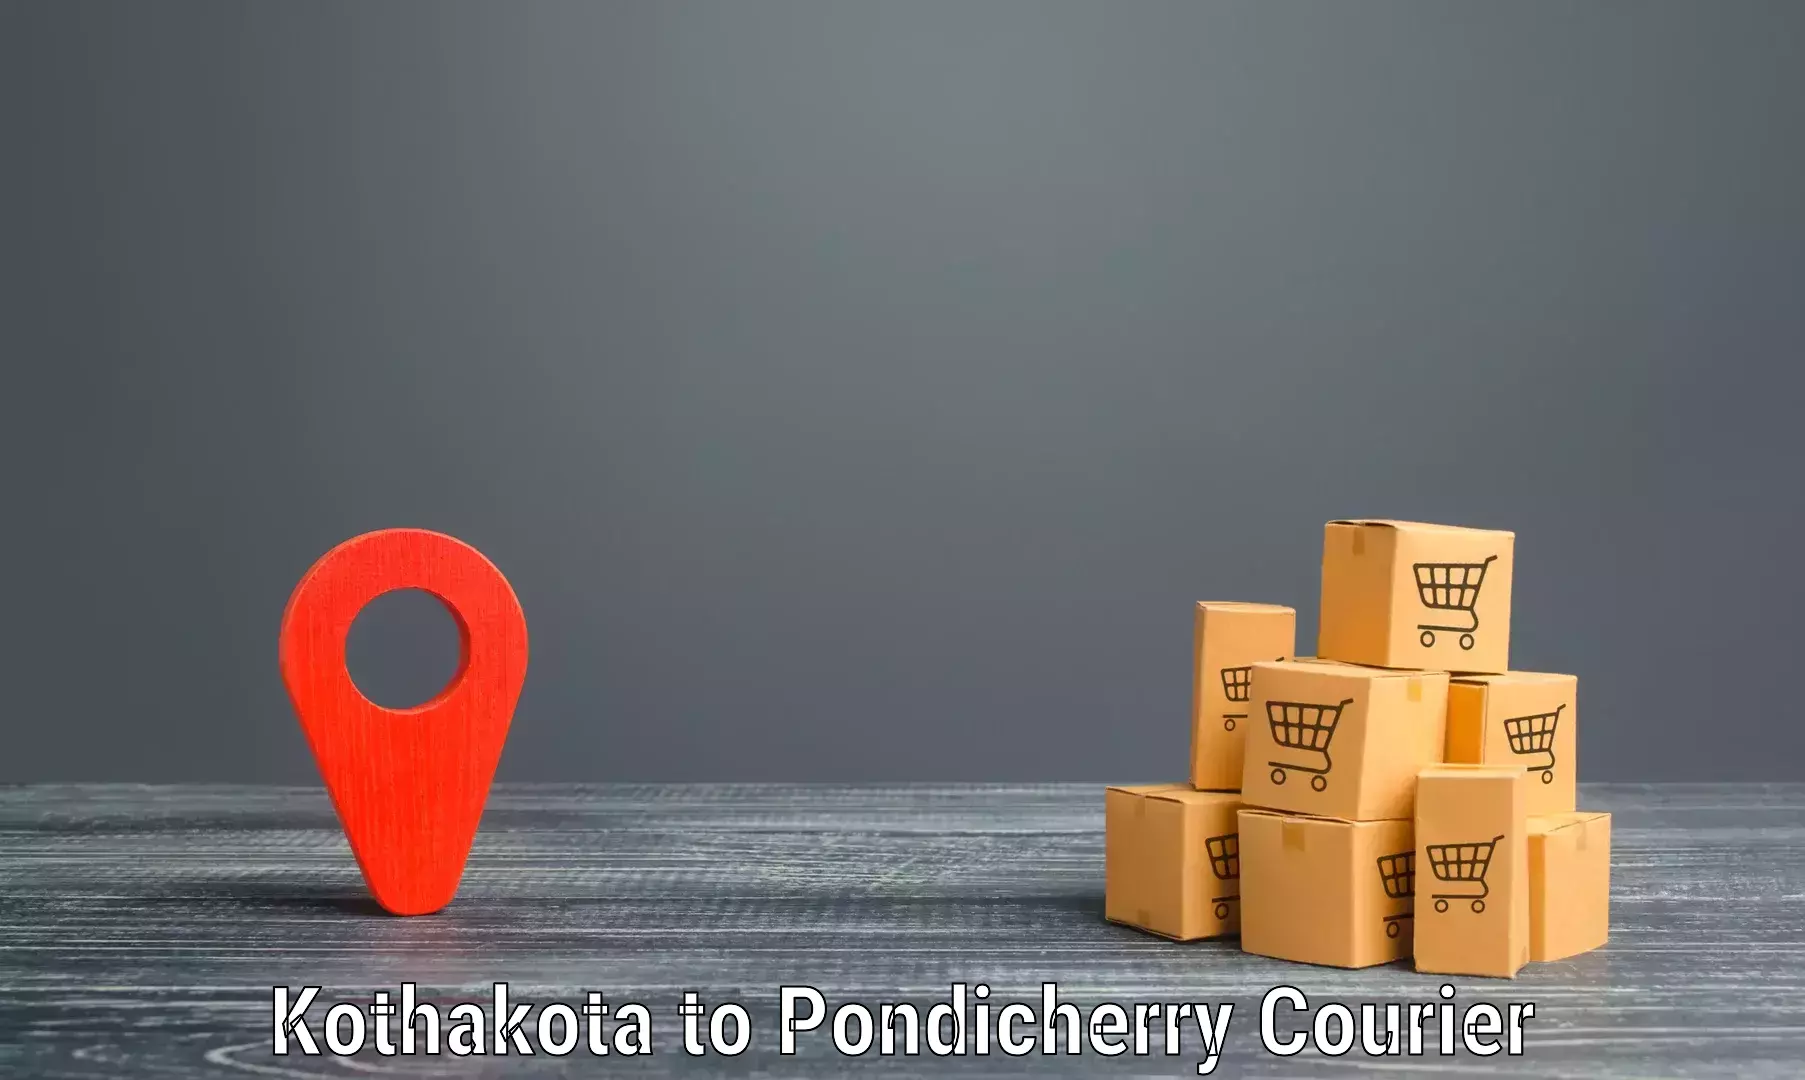 Courier insurance Kothakota to Pondicherry